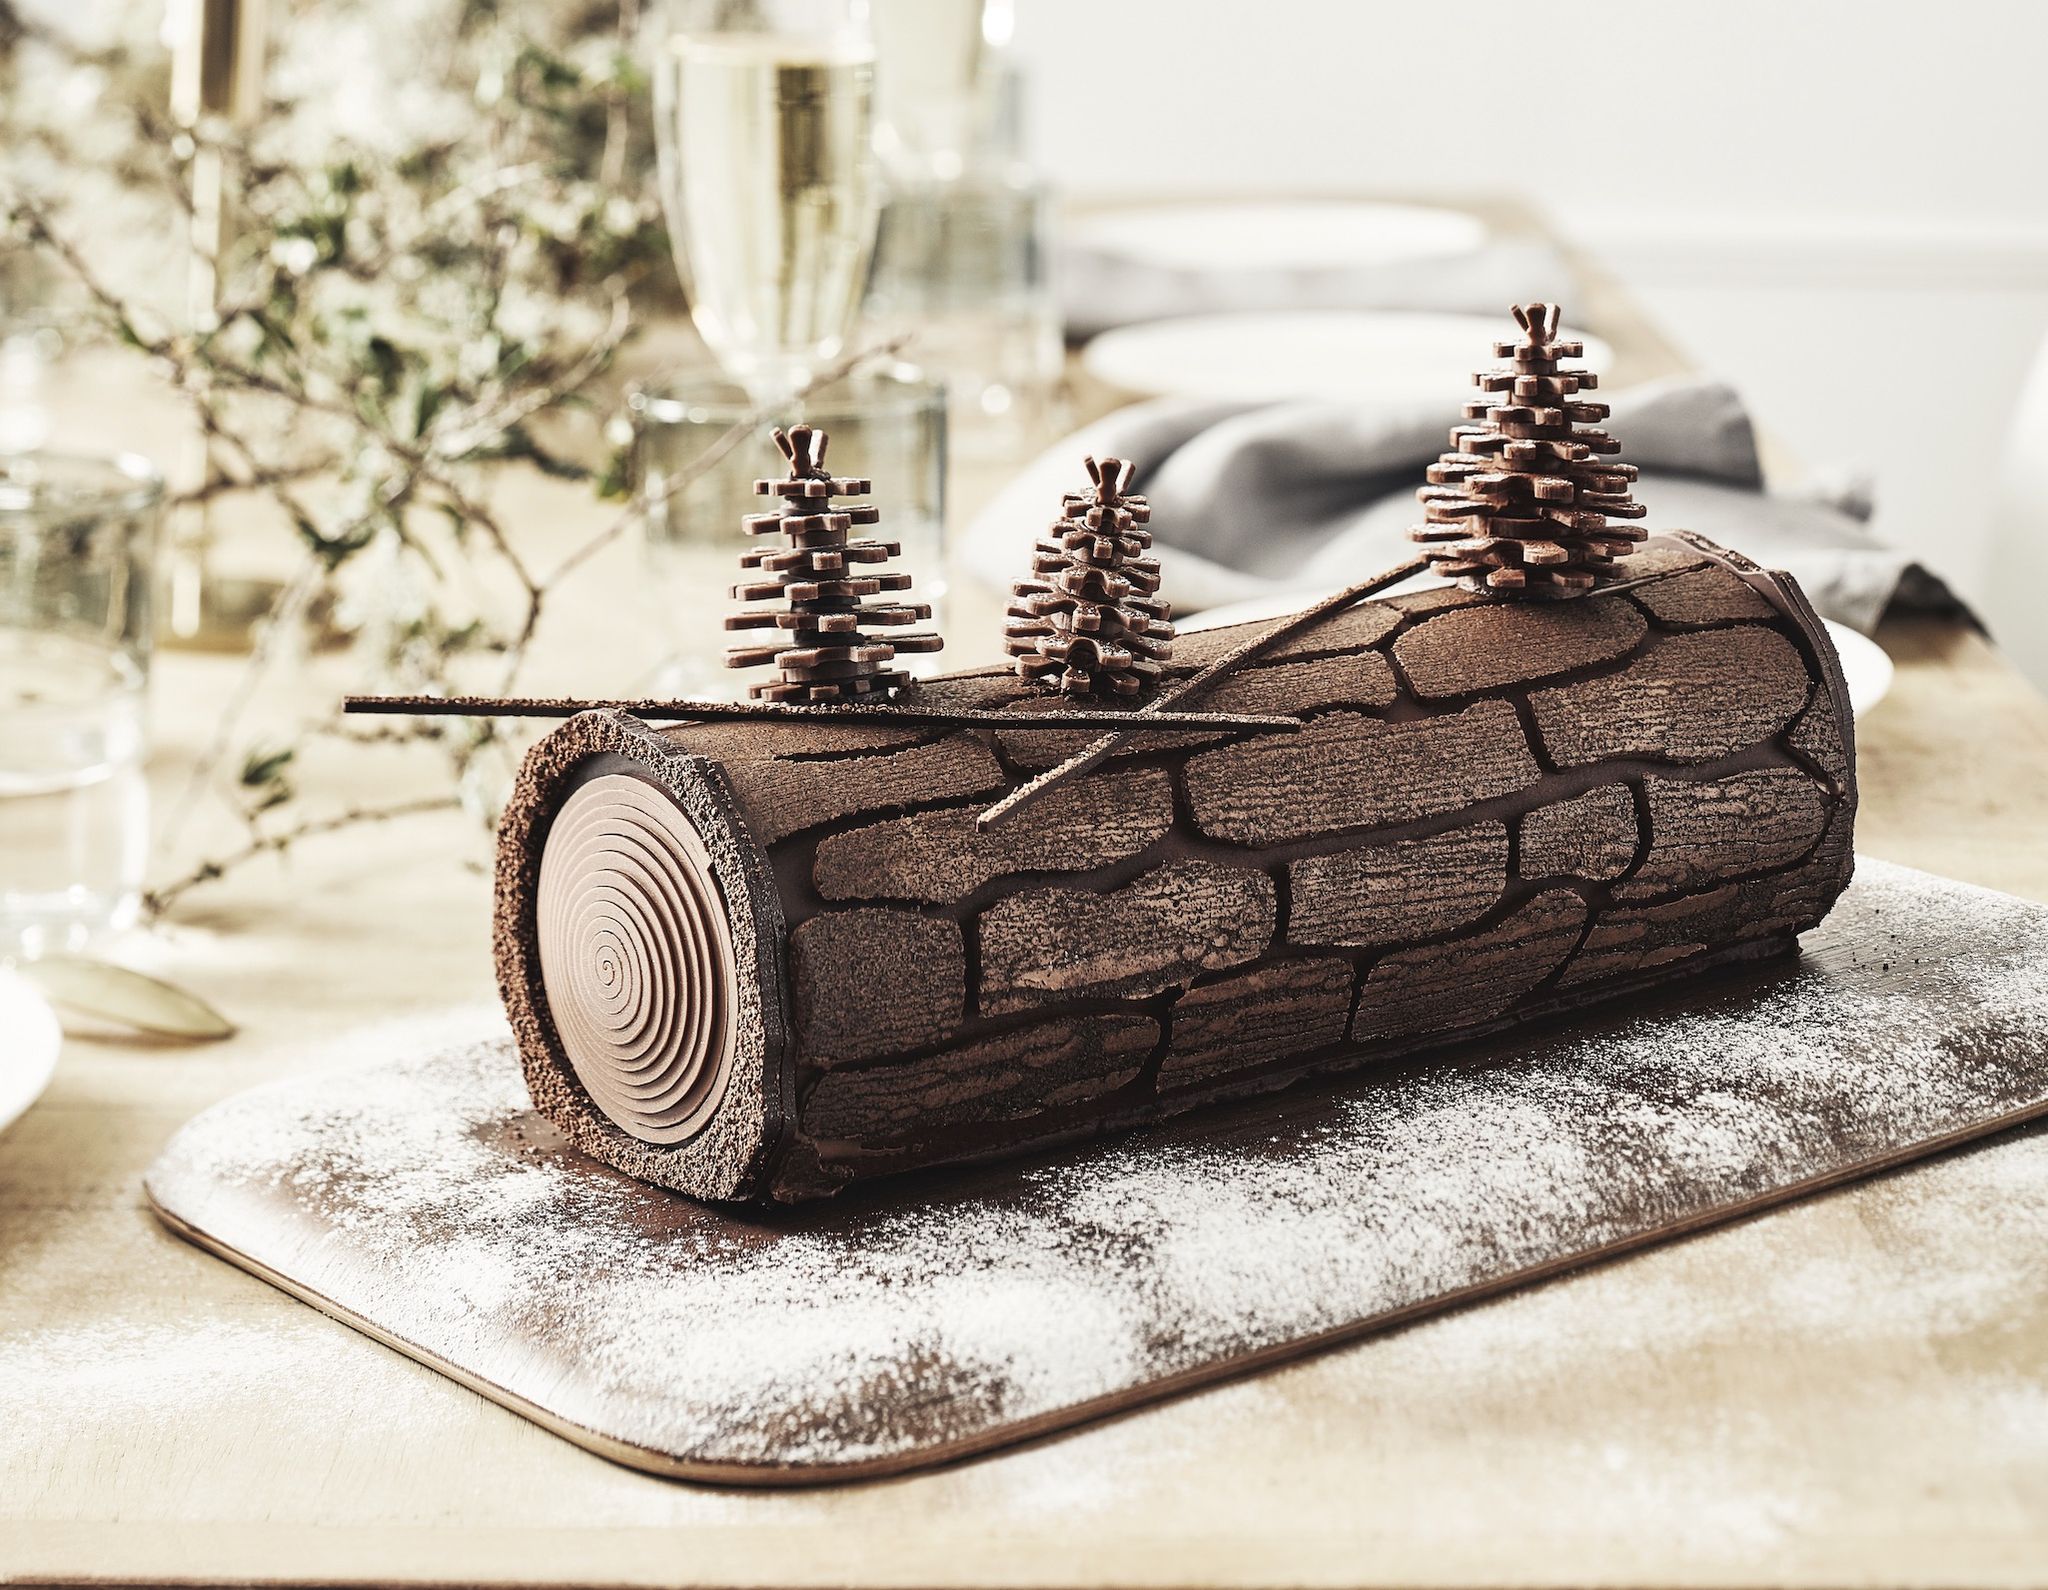 Bûche de Noël au chocolat et son insert framboise - La recette avec photos  - Meilleur du Chef